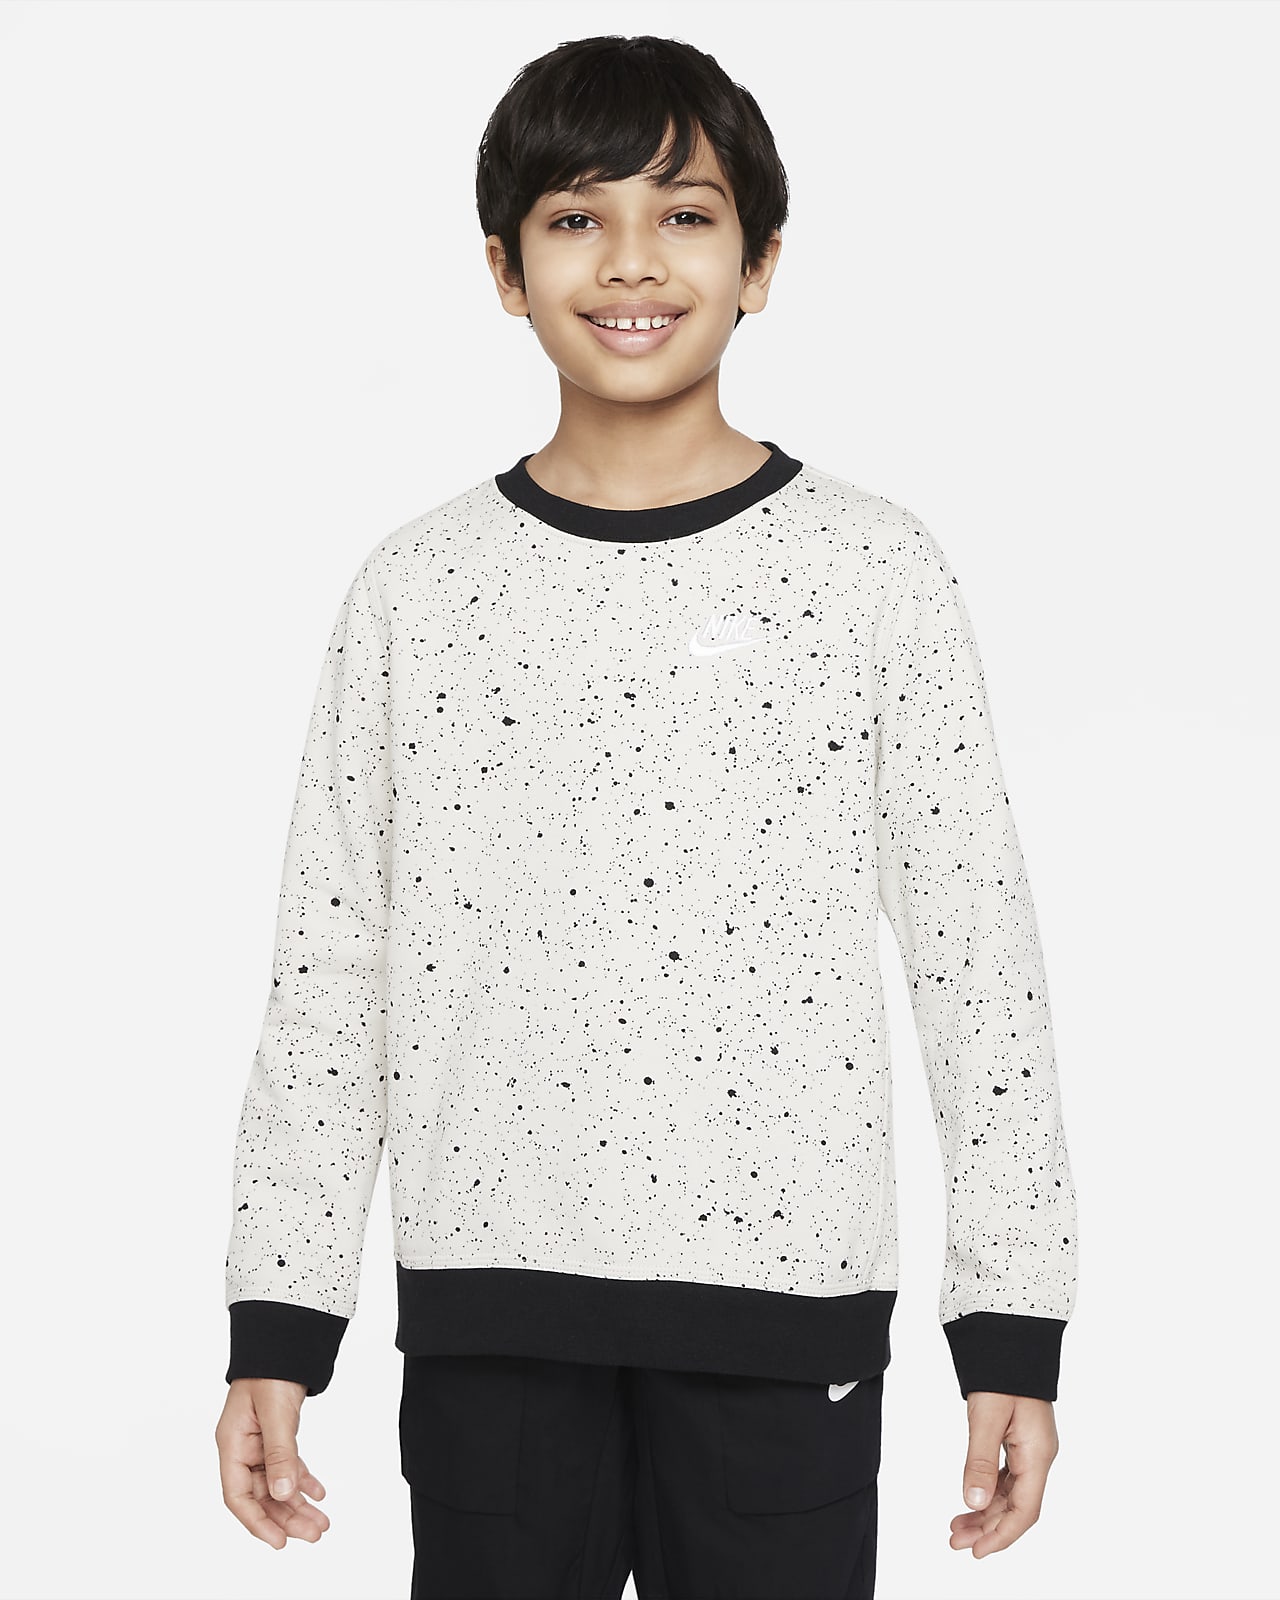 Sezóní tričko Nike Sportswear s potiskem pro větší děti (chlapce)